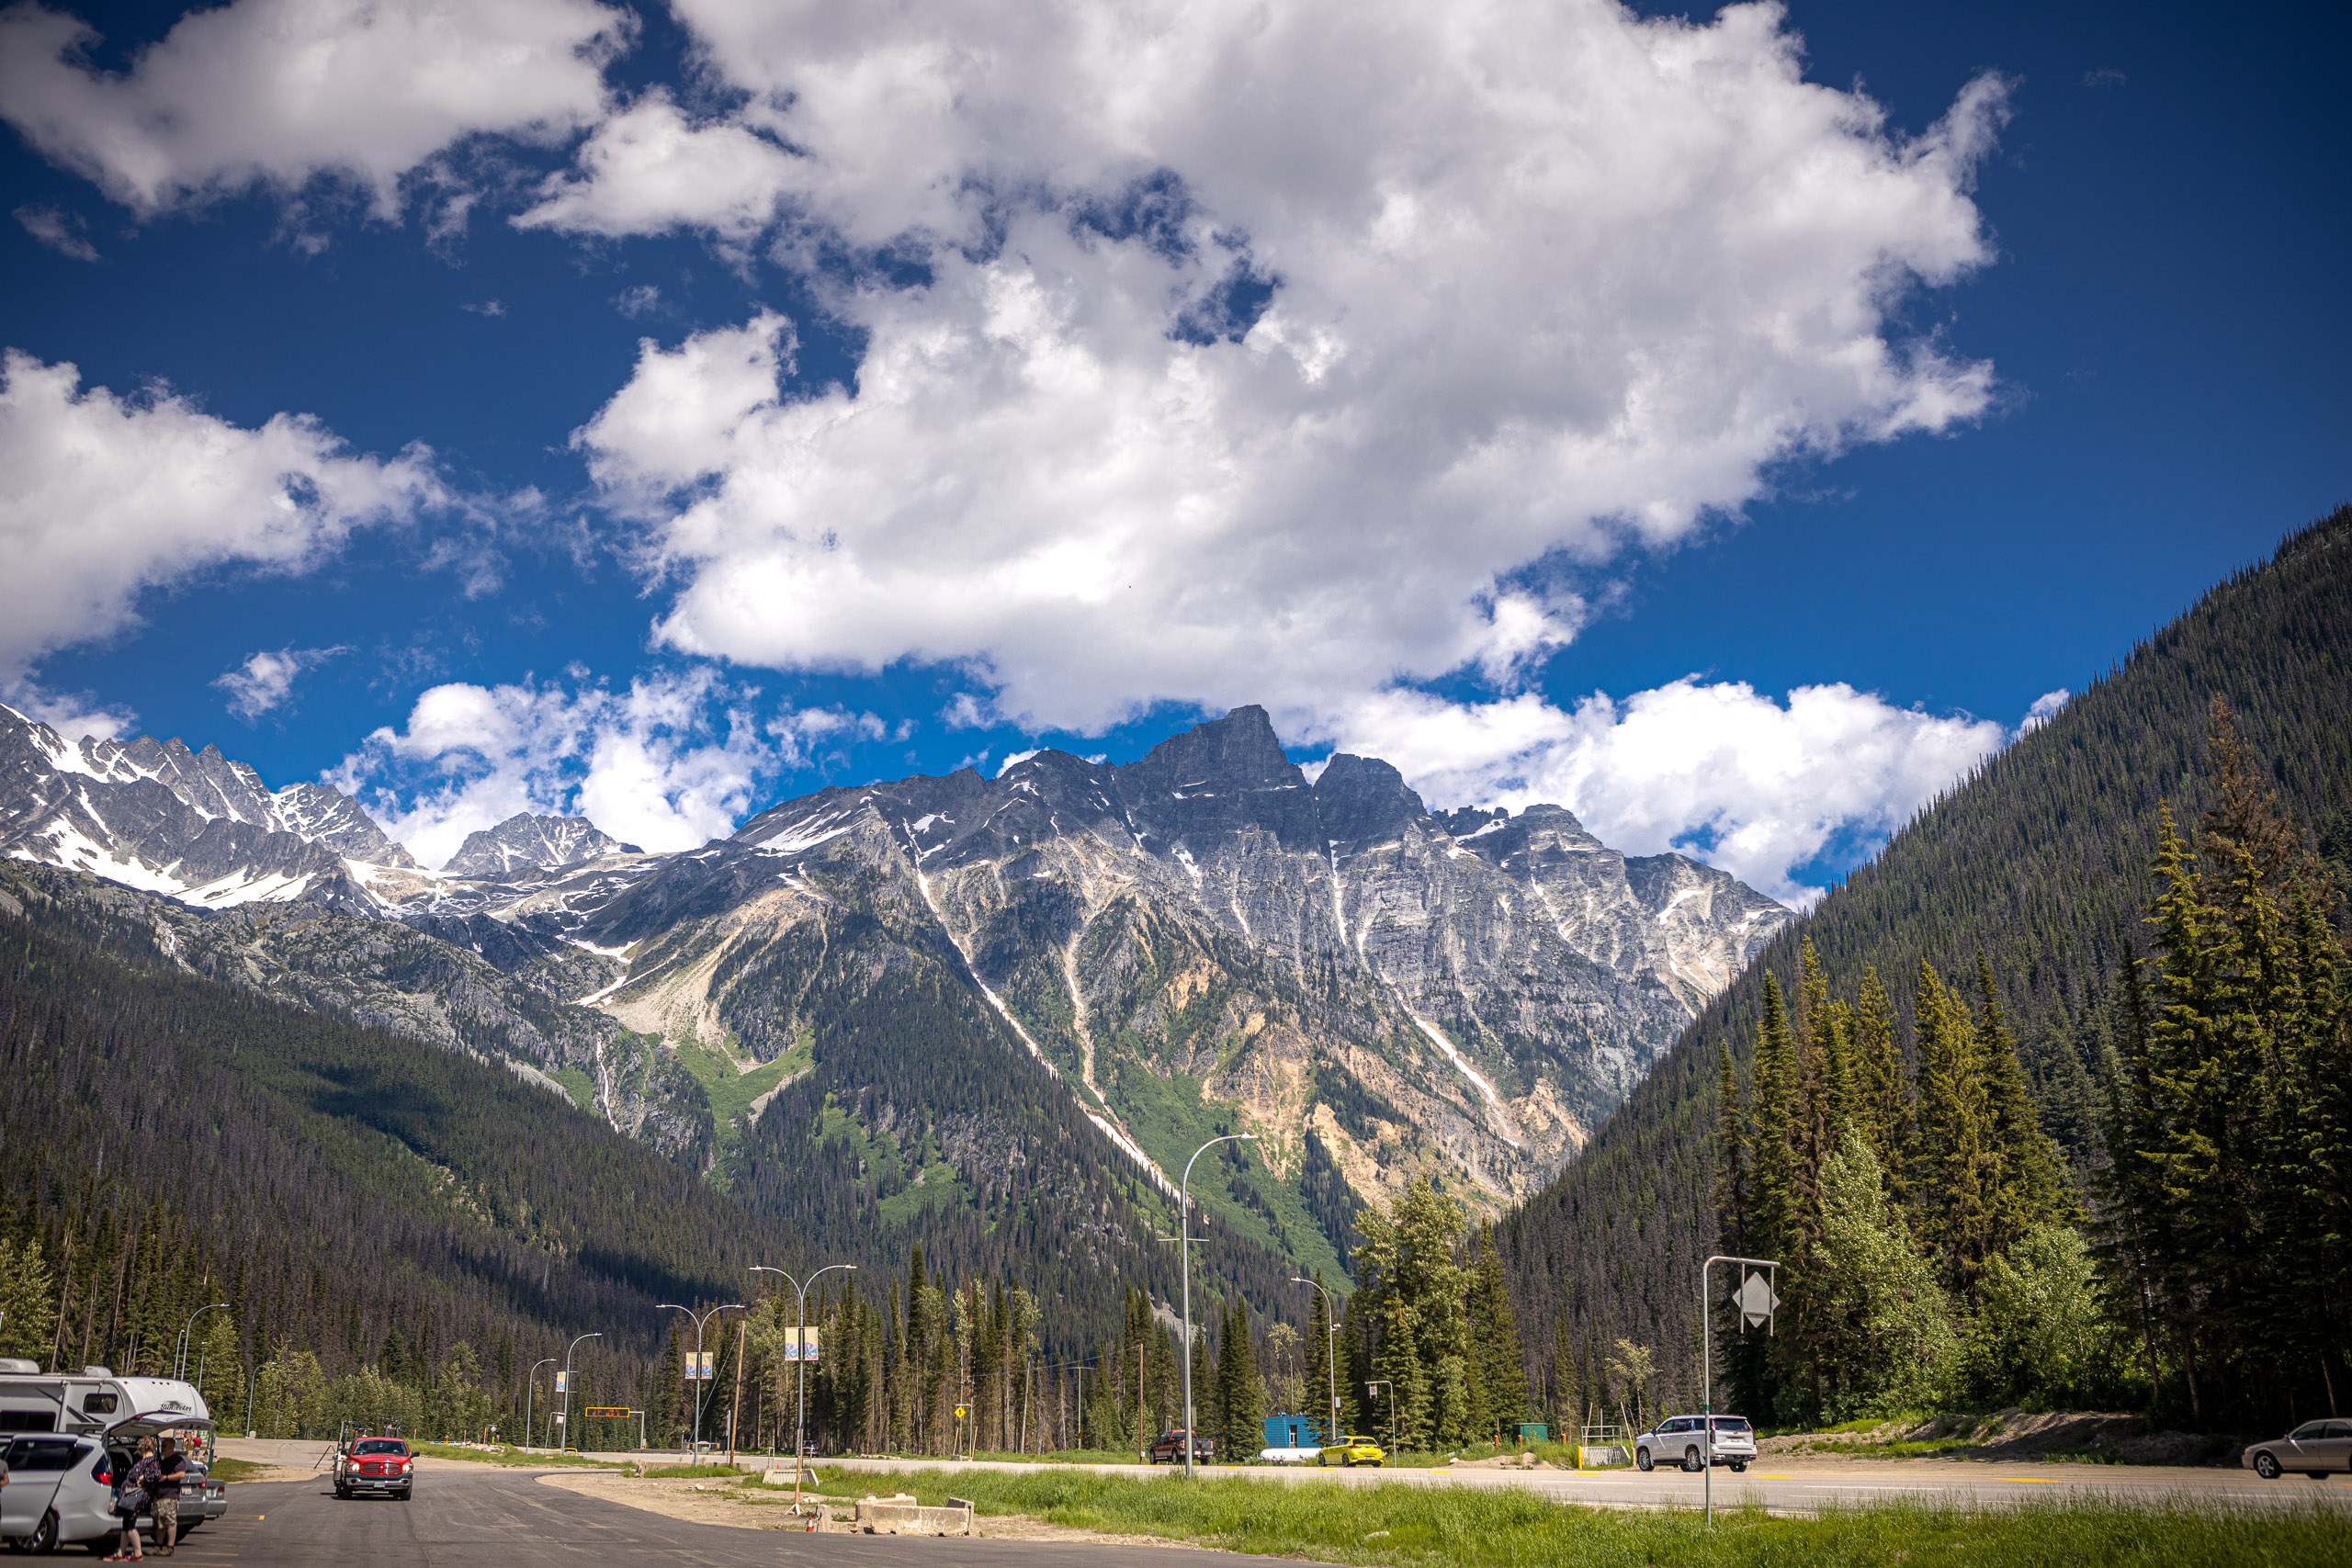 Mooie hoge bergen langs de snelweg in Canada met blauwe wolkenlucht. Wat zijn de kosten van een rondreis door Canada met camper?